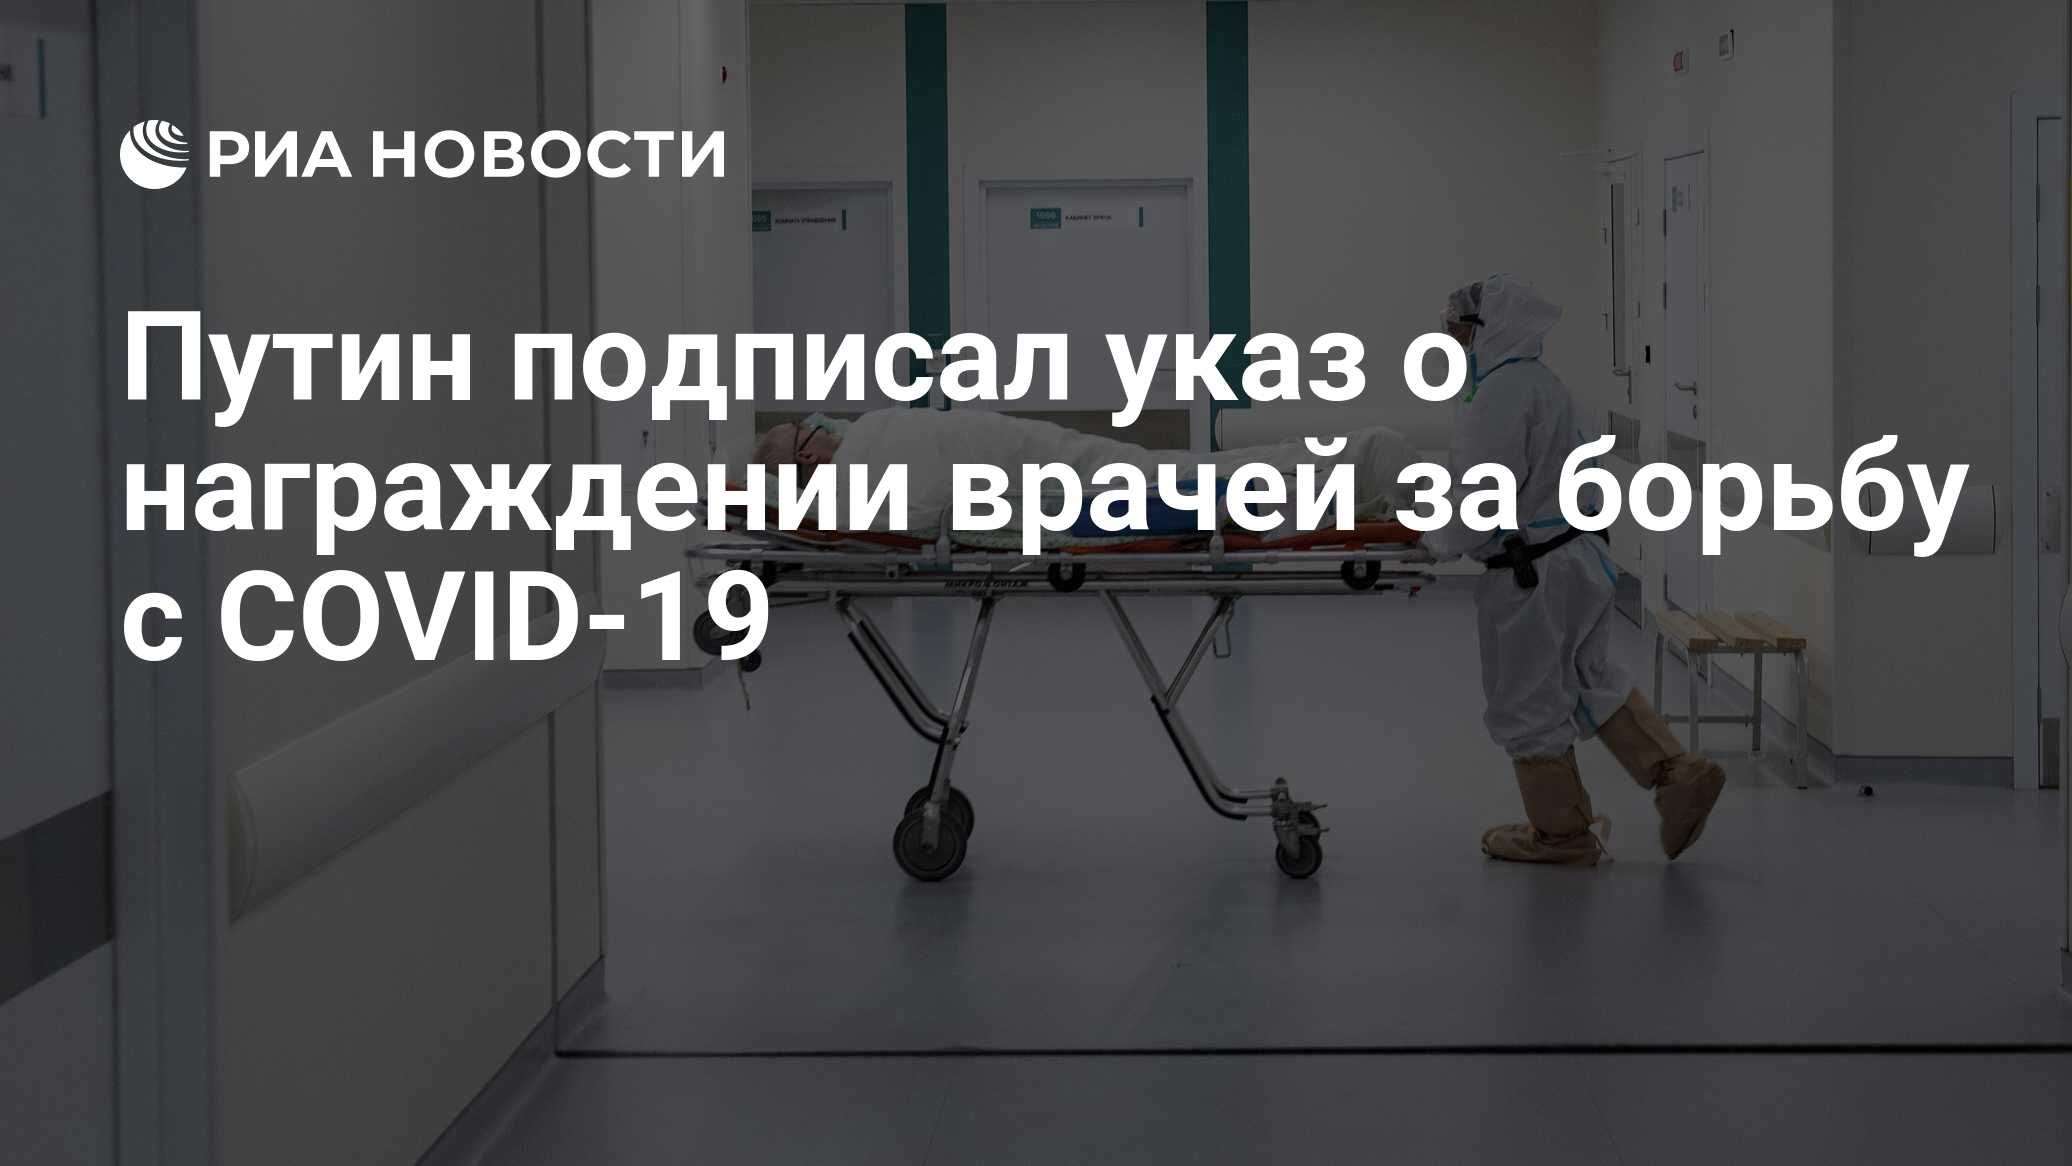 Путин подписал указ о награждении врачей за борьбу с COVID-19